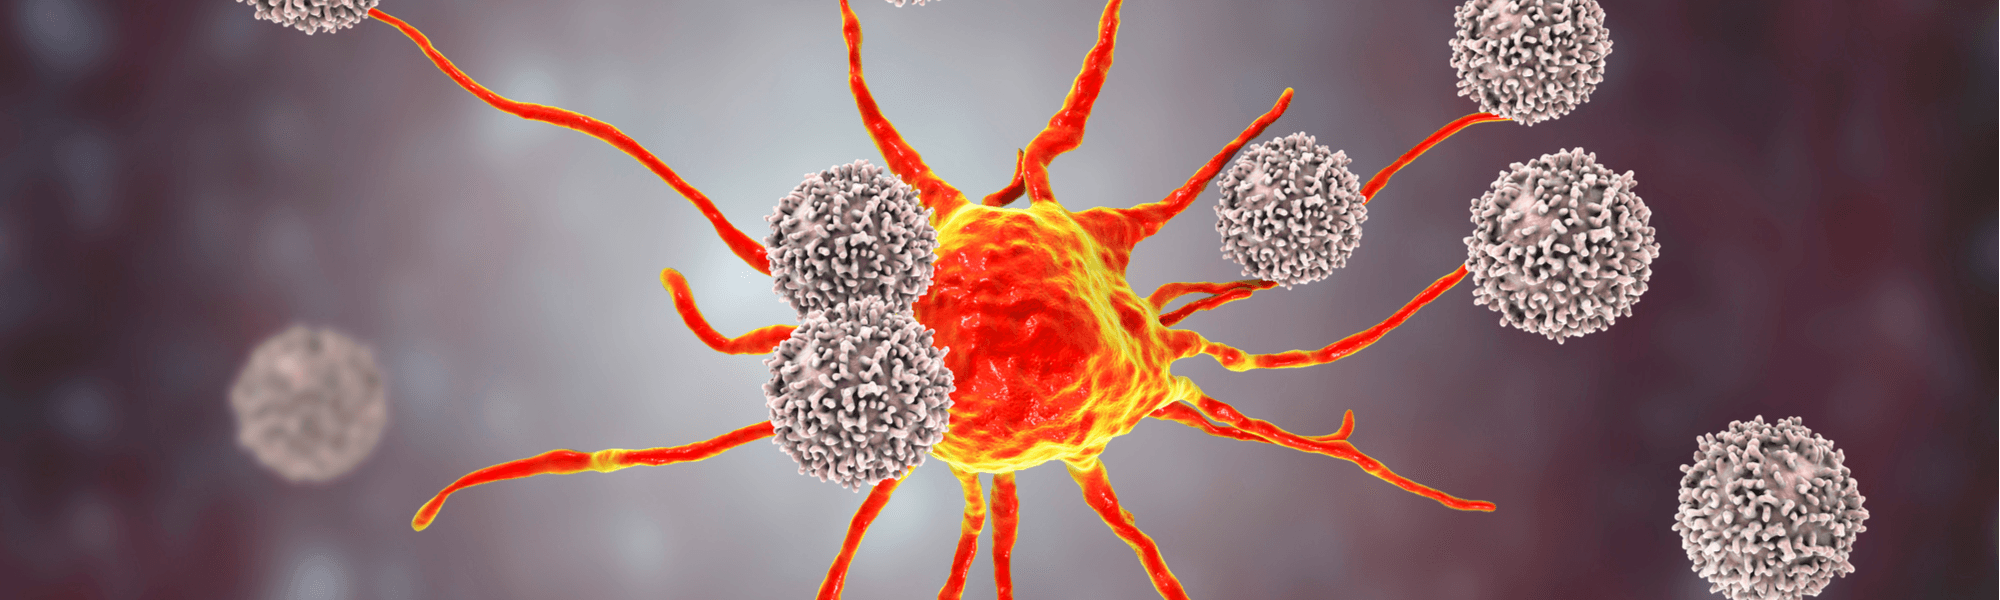 Jak powstaje nowotwór - rodzaje, geny, mutacje i etapy